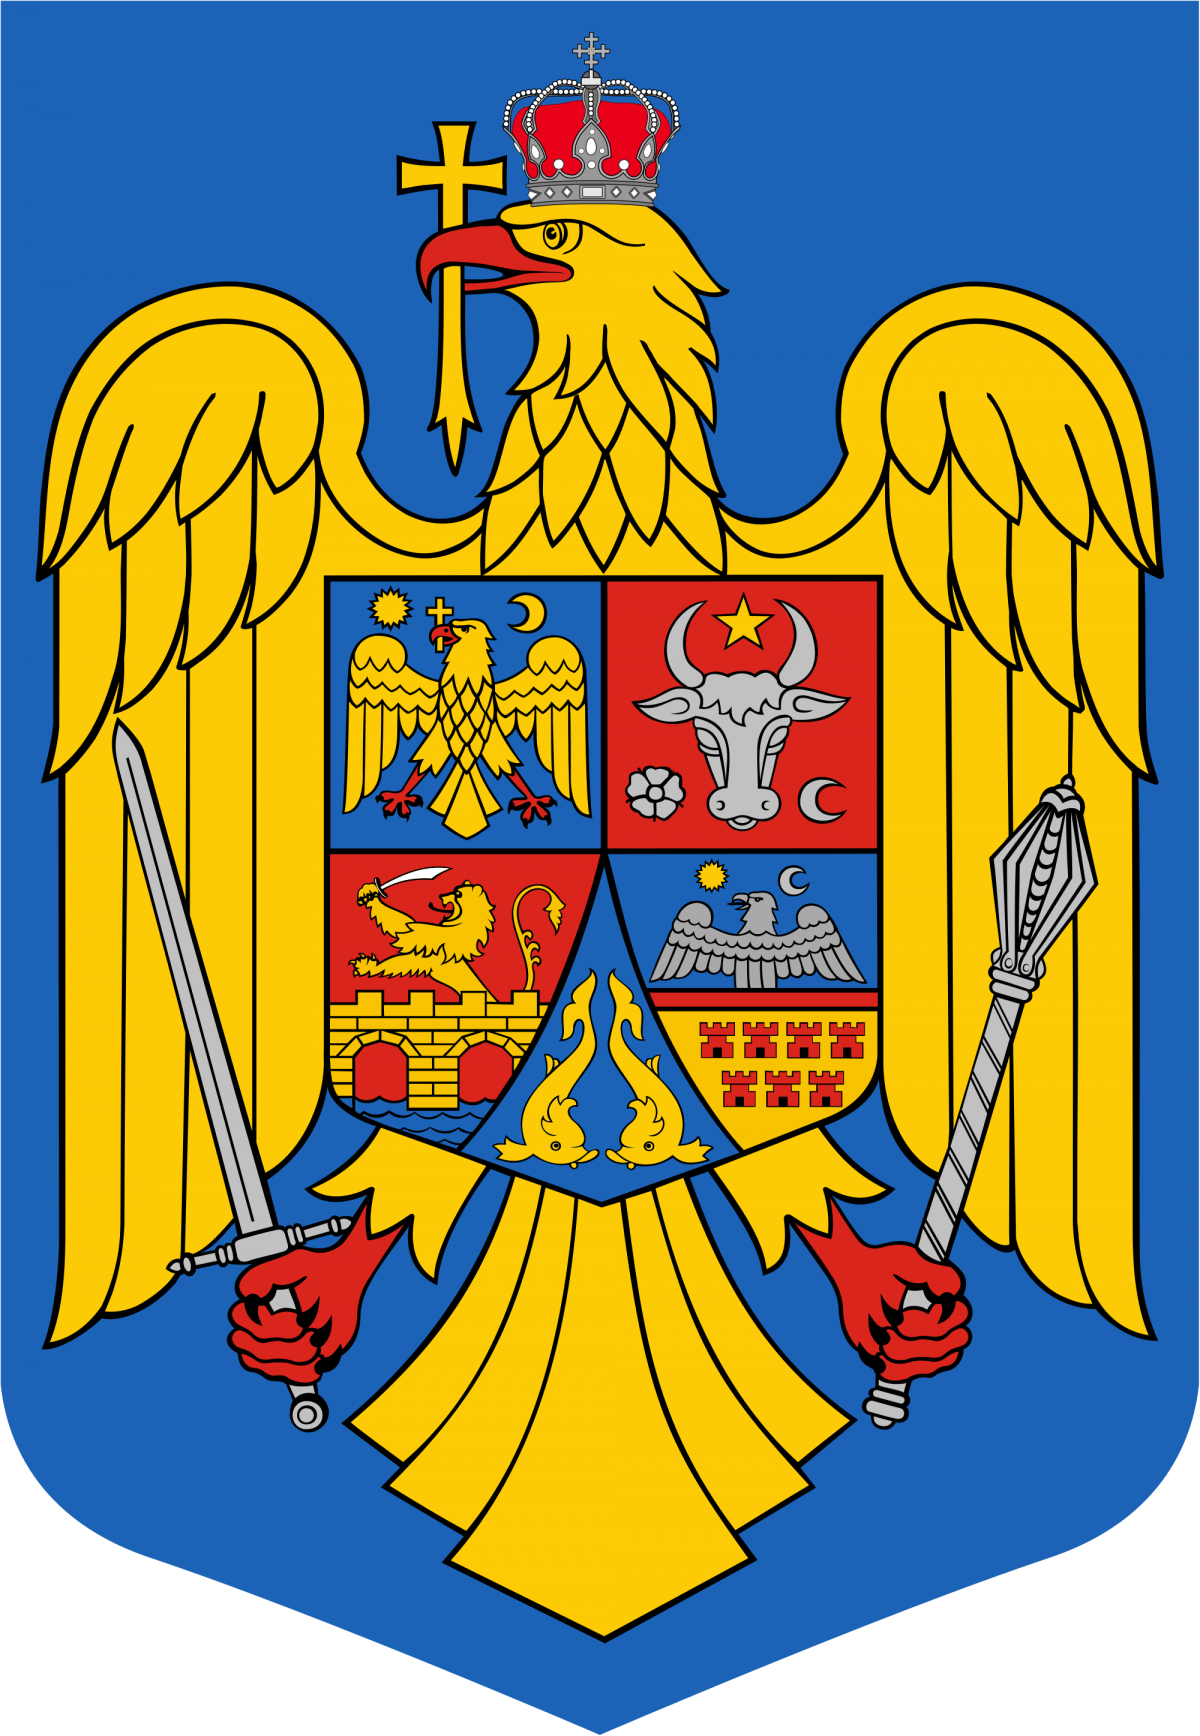 ORDONANȚA MILITARĂ nr. 6 din 30.03.2020 privind instituirea măsurii de carantinare asupra municipiului Suceava